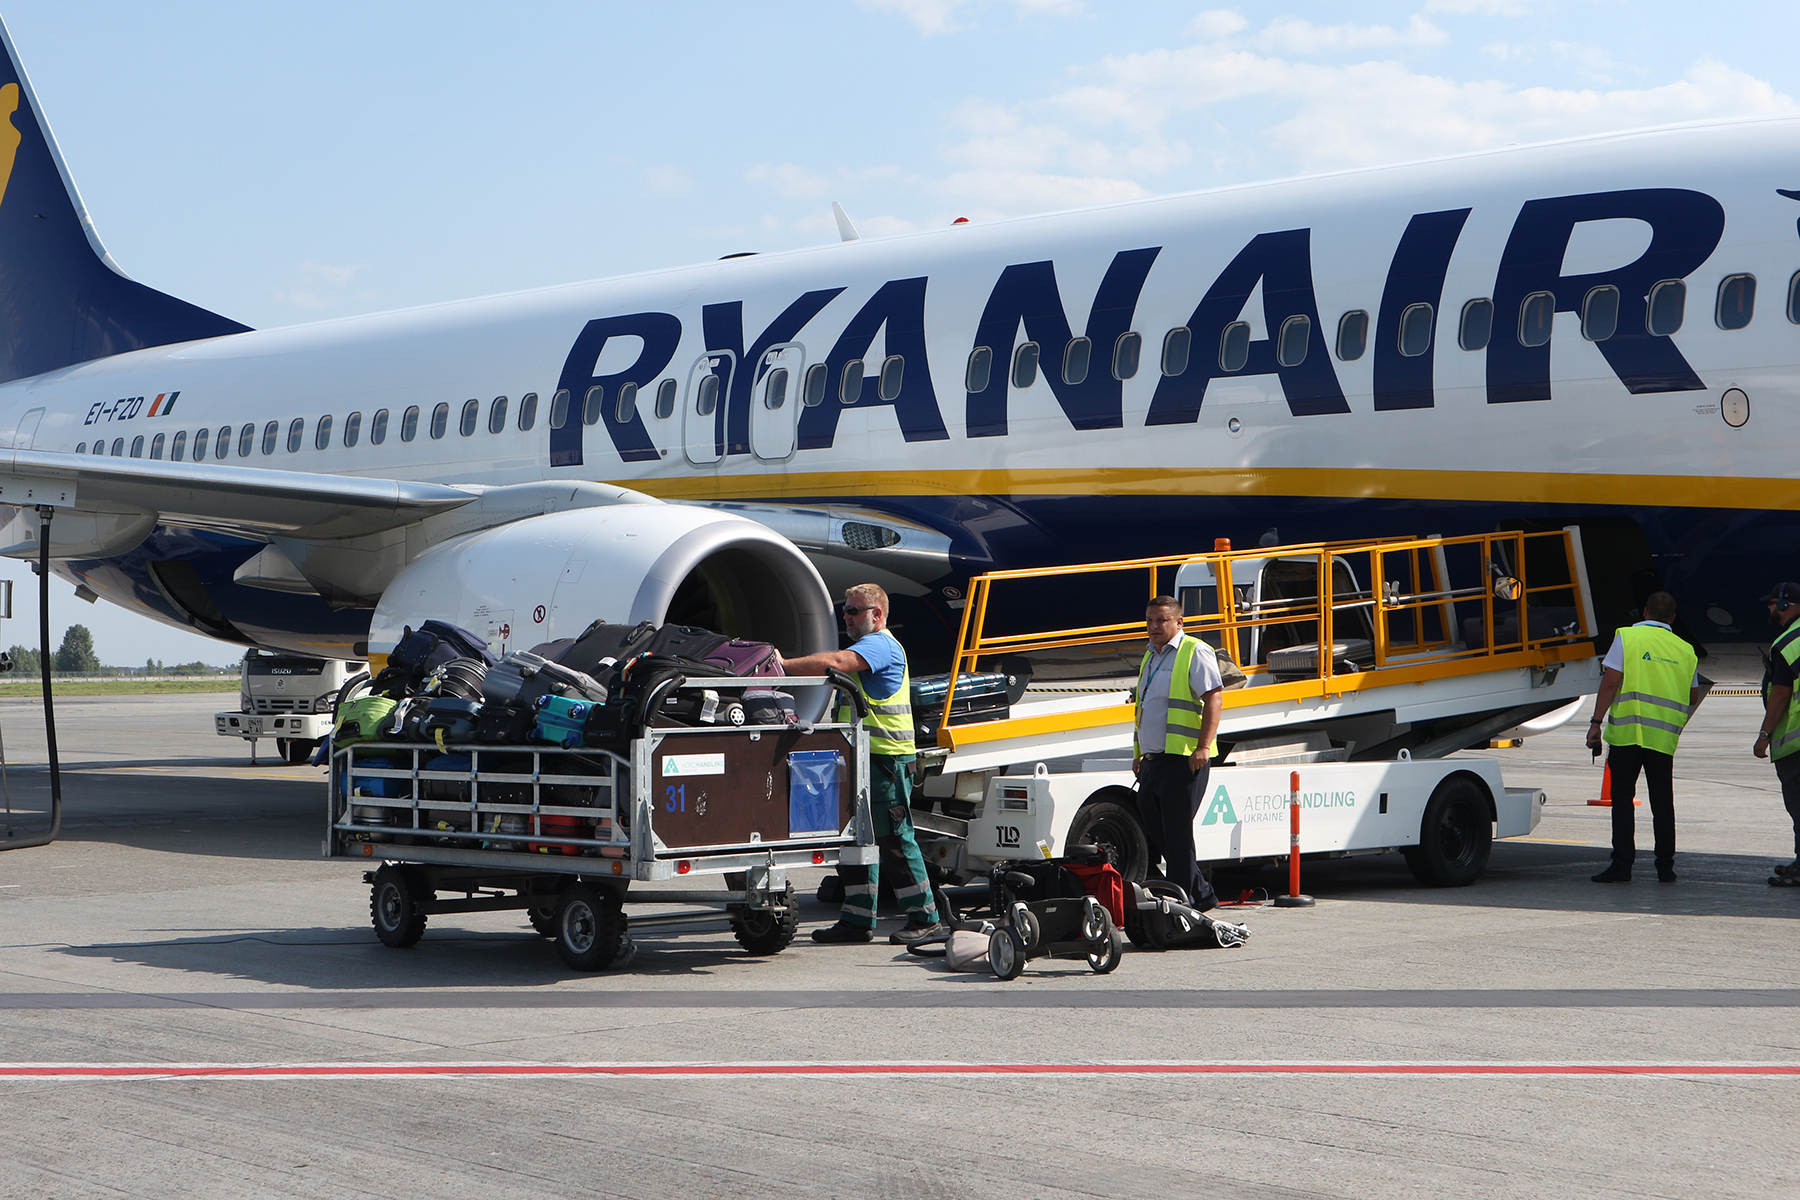 Выгрузка багажа. Как только заканчивается выгрузка, работники наземной службы сразу же начинают загрузку багажа пассажиров, летящих в Берлин.